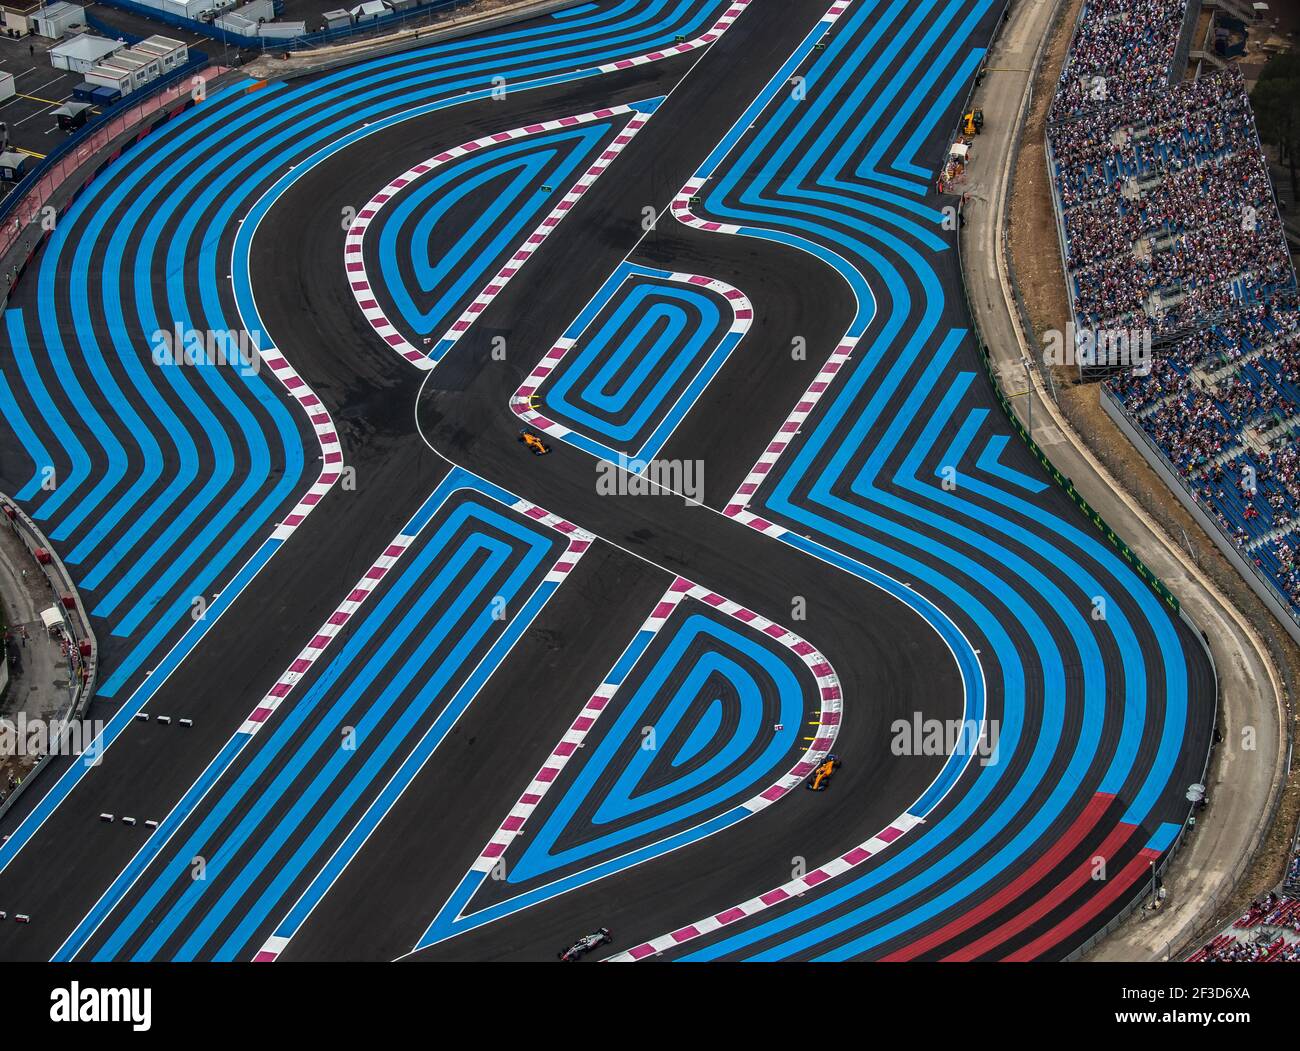 Aérien Ansicht Paul Ricard Circuit, während der Formel-1-Weltmeisterschaft 2018, grand Prix von frankreich am 22. Bis 24. juni in Le Castellet - Foto Marc de Mattia / DPPI Stockfoto